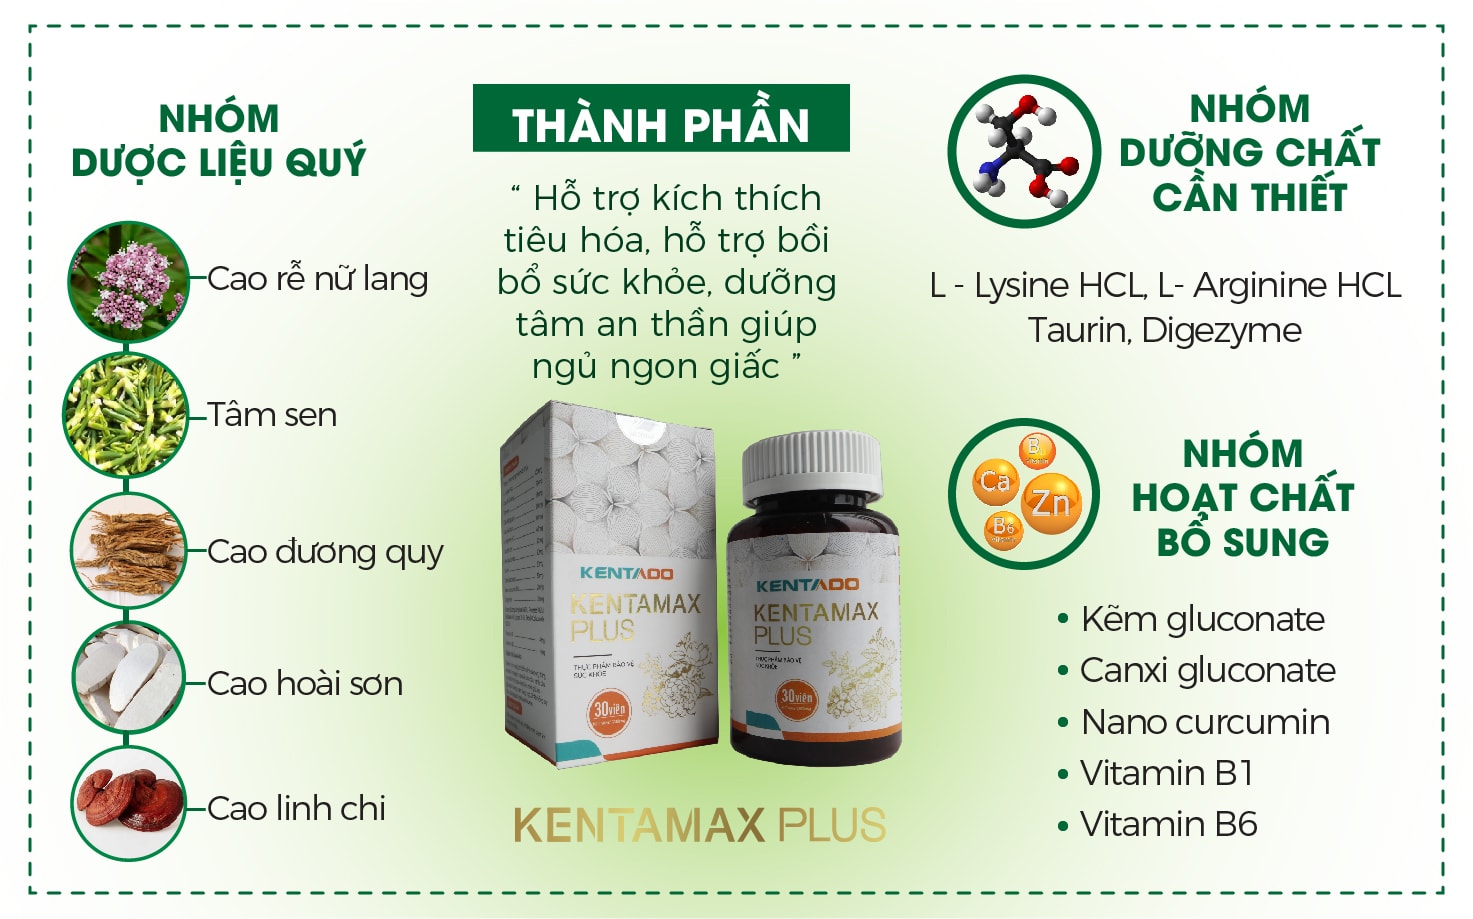 Thành phần thuốc tăng cân tự nhiên Kentamax Plus